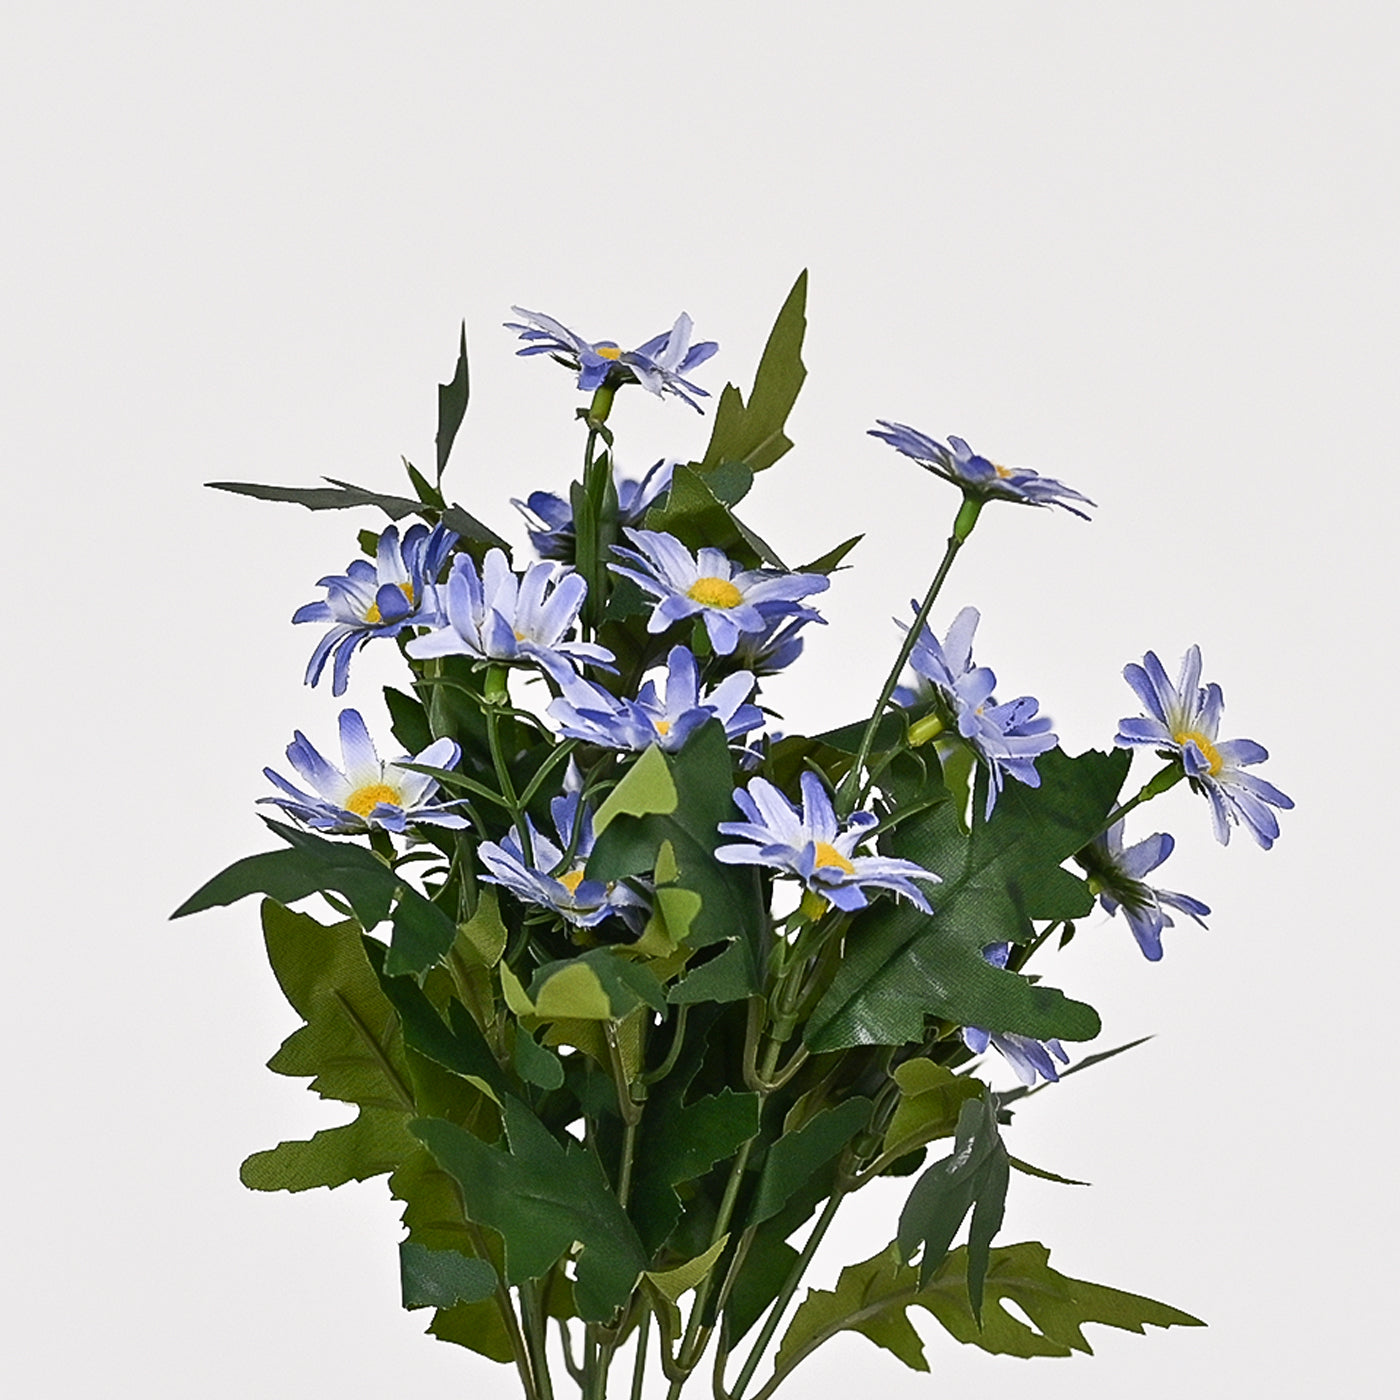 Set of 1 Artificial Plant & Flower Bush in Pot (Blue)